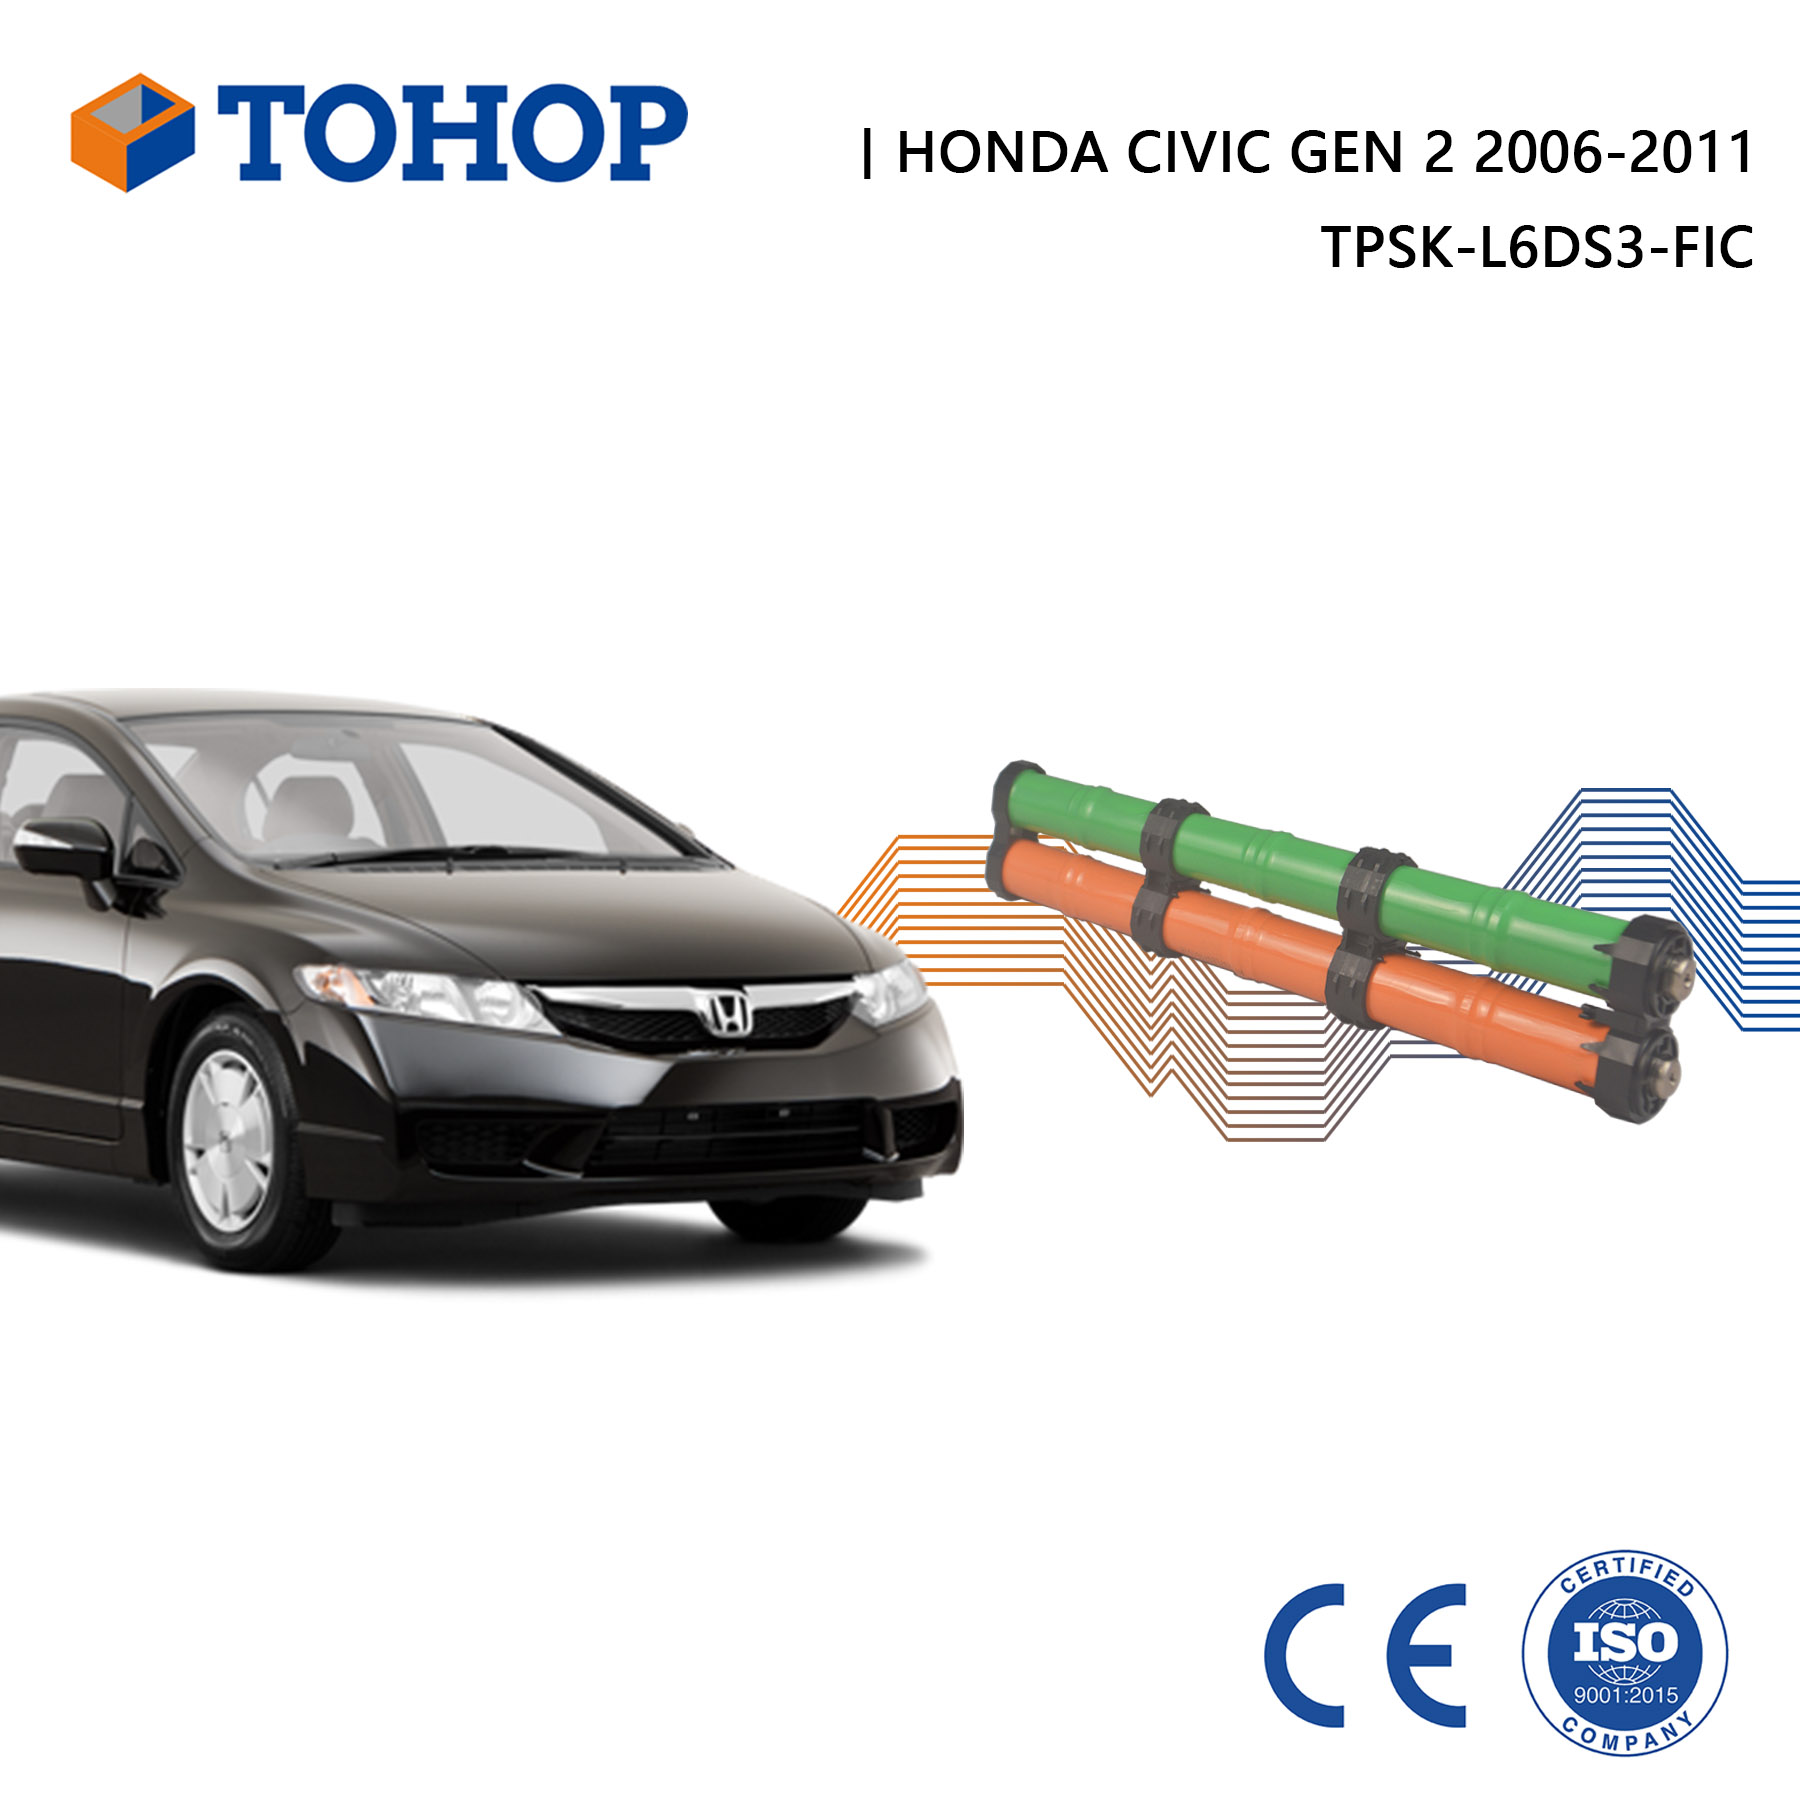 Gen.2 Civic 2010 Ima Battery Pack for Honda